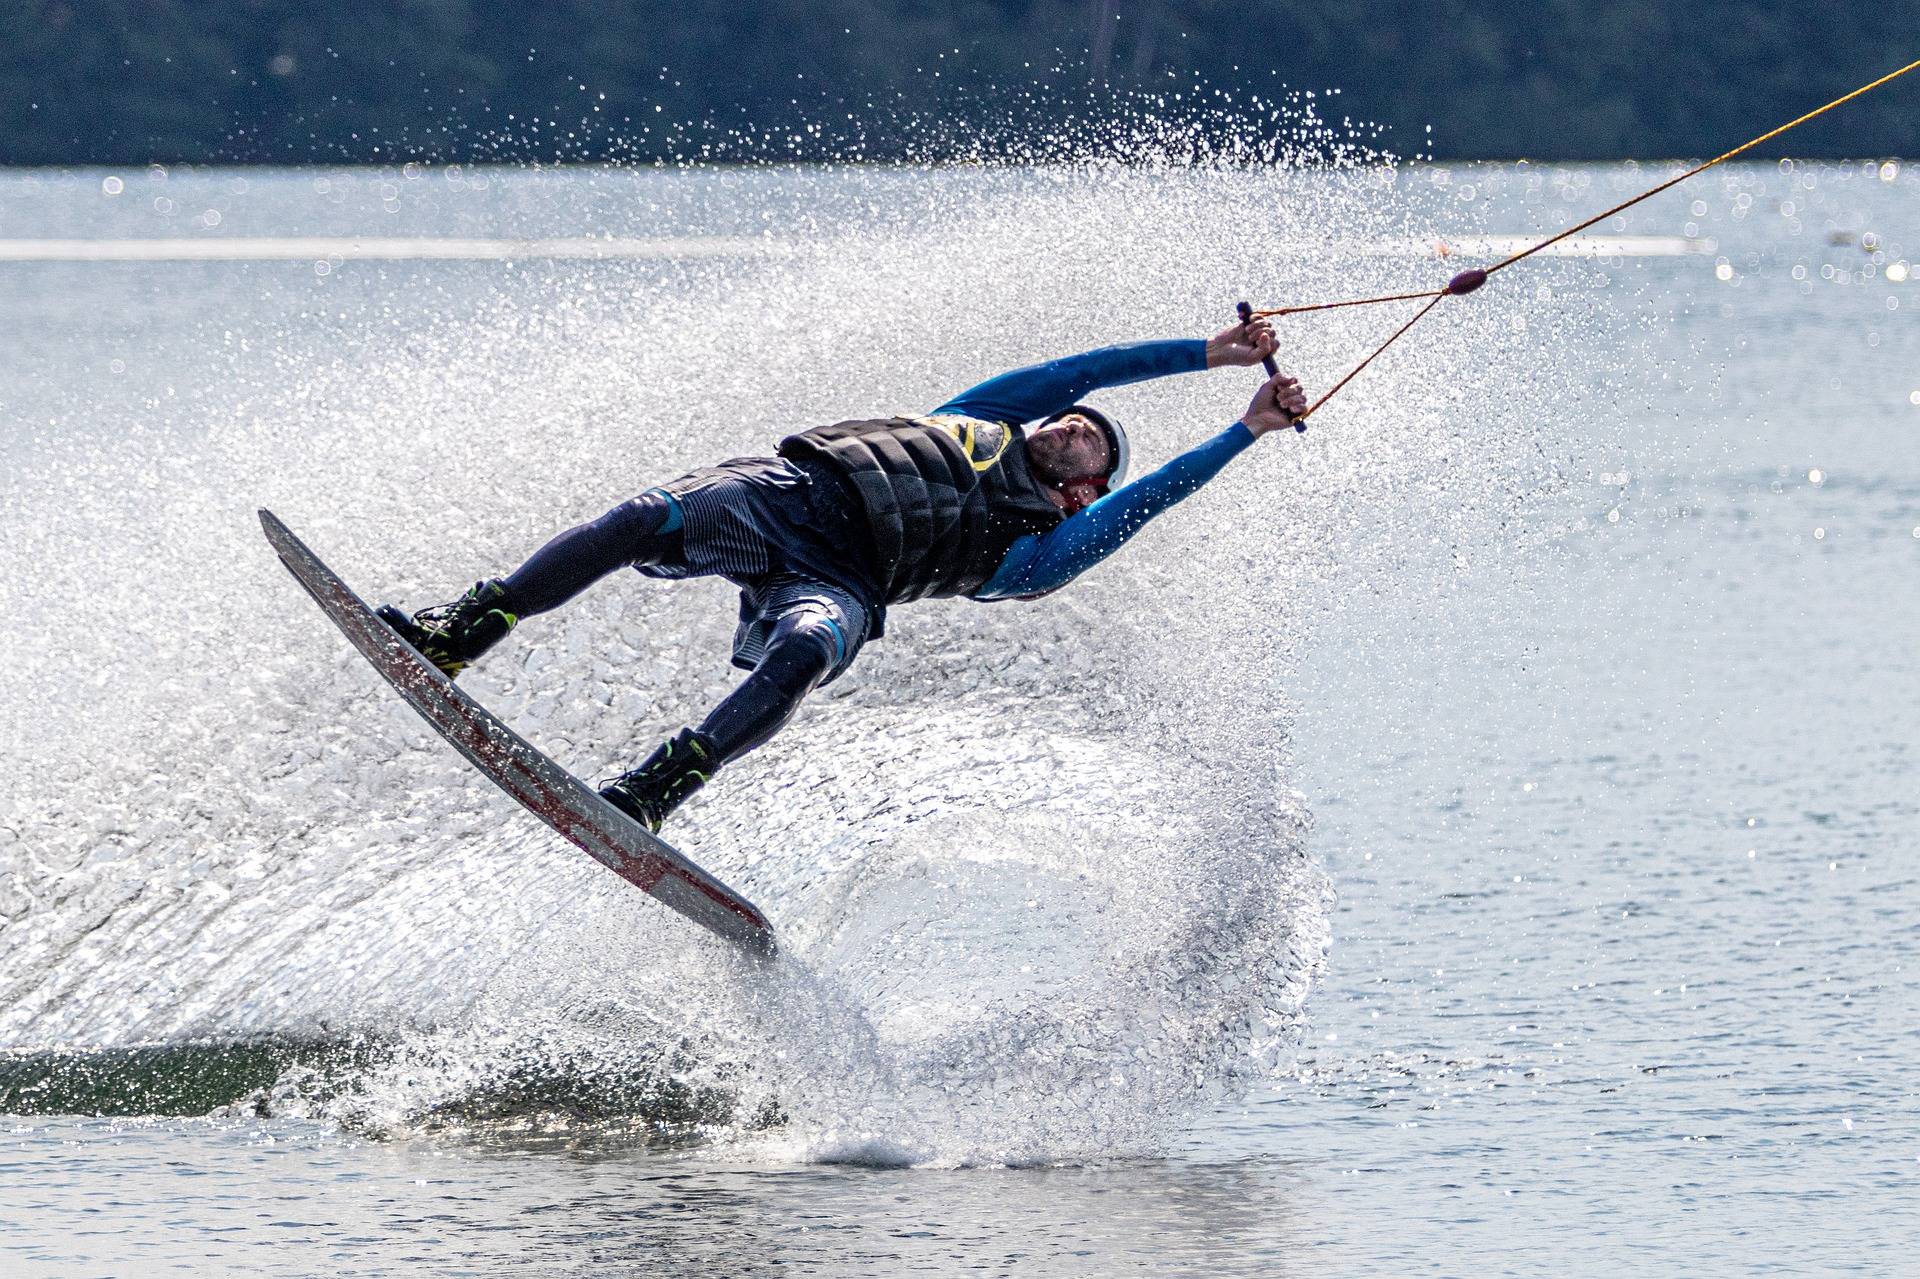 Увлекаться водным. Водный спорт. Водные лыжи вид спорта. Занятие экстремальными видами спорта. Экстремальные водные виды спорта.